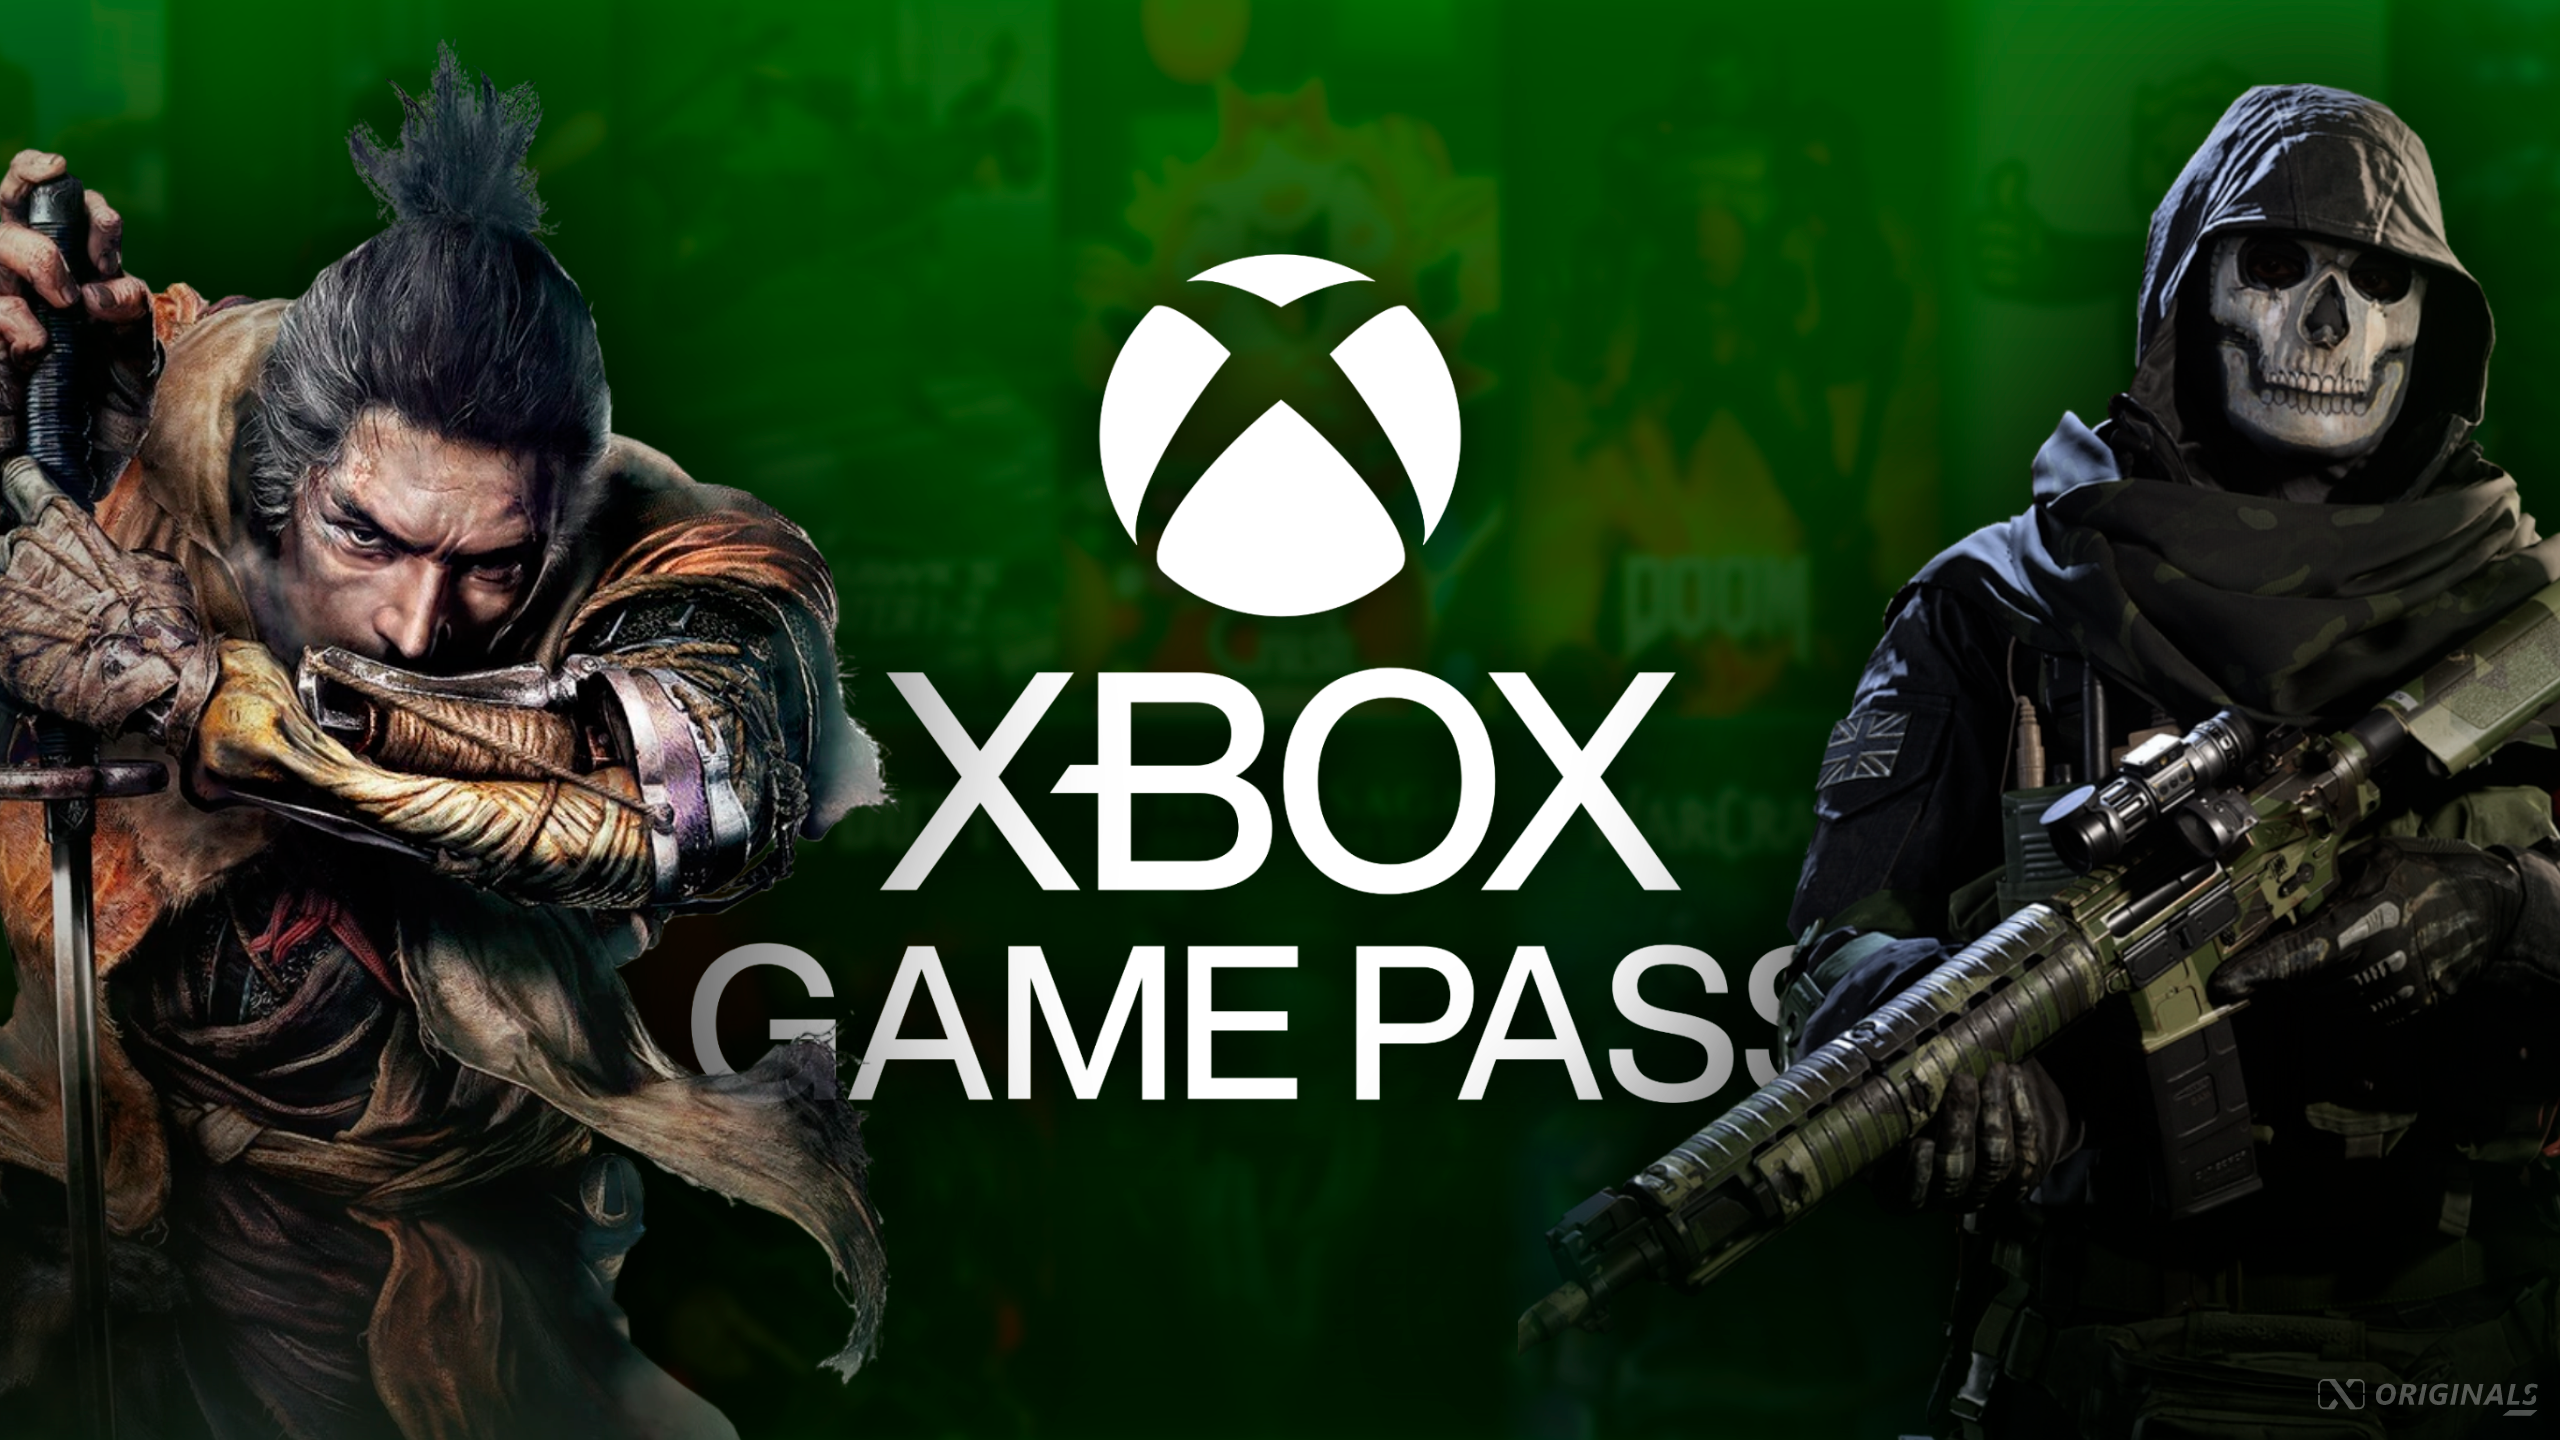 Jogos da Activision podem chegar apenas ao Xbox Game Pass Ultimate